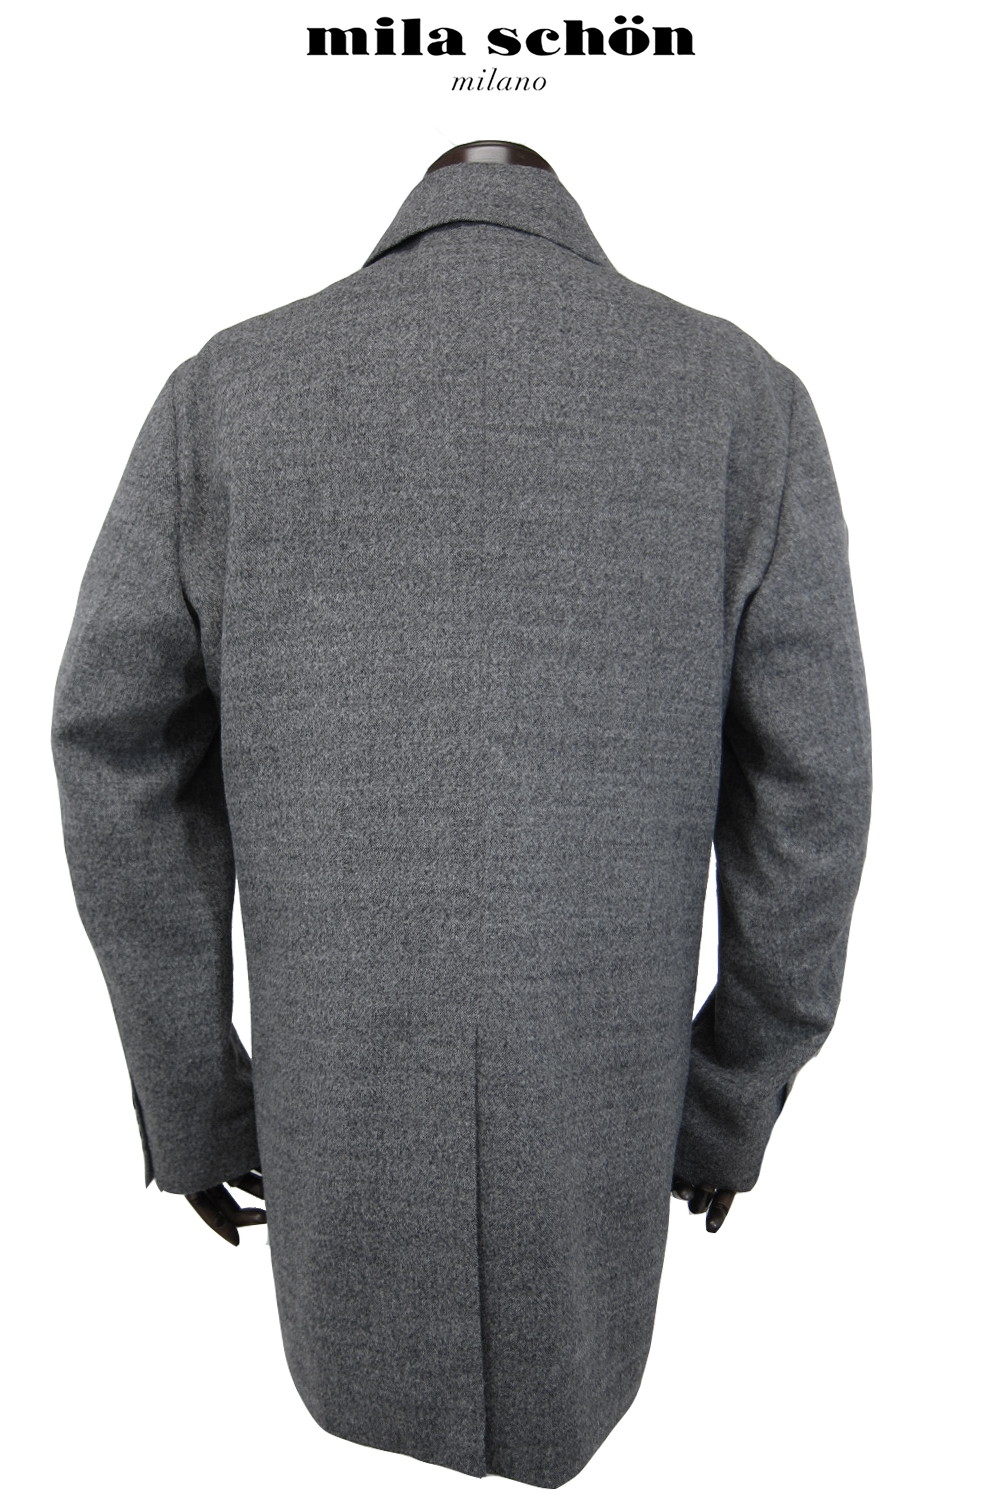  Mila Schon пальто осень-зима предмет baby альпака 100% полупальто bar цвет пальто с отложным воротником серый одноцветный легкий сделано в Японии производитель стандартный товар 